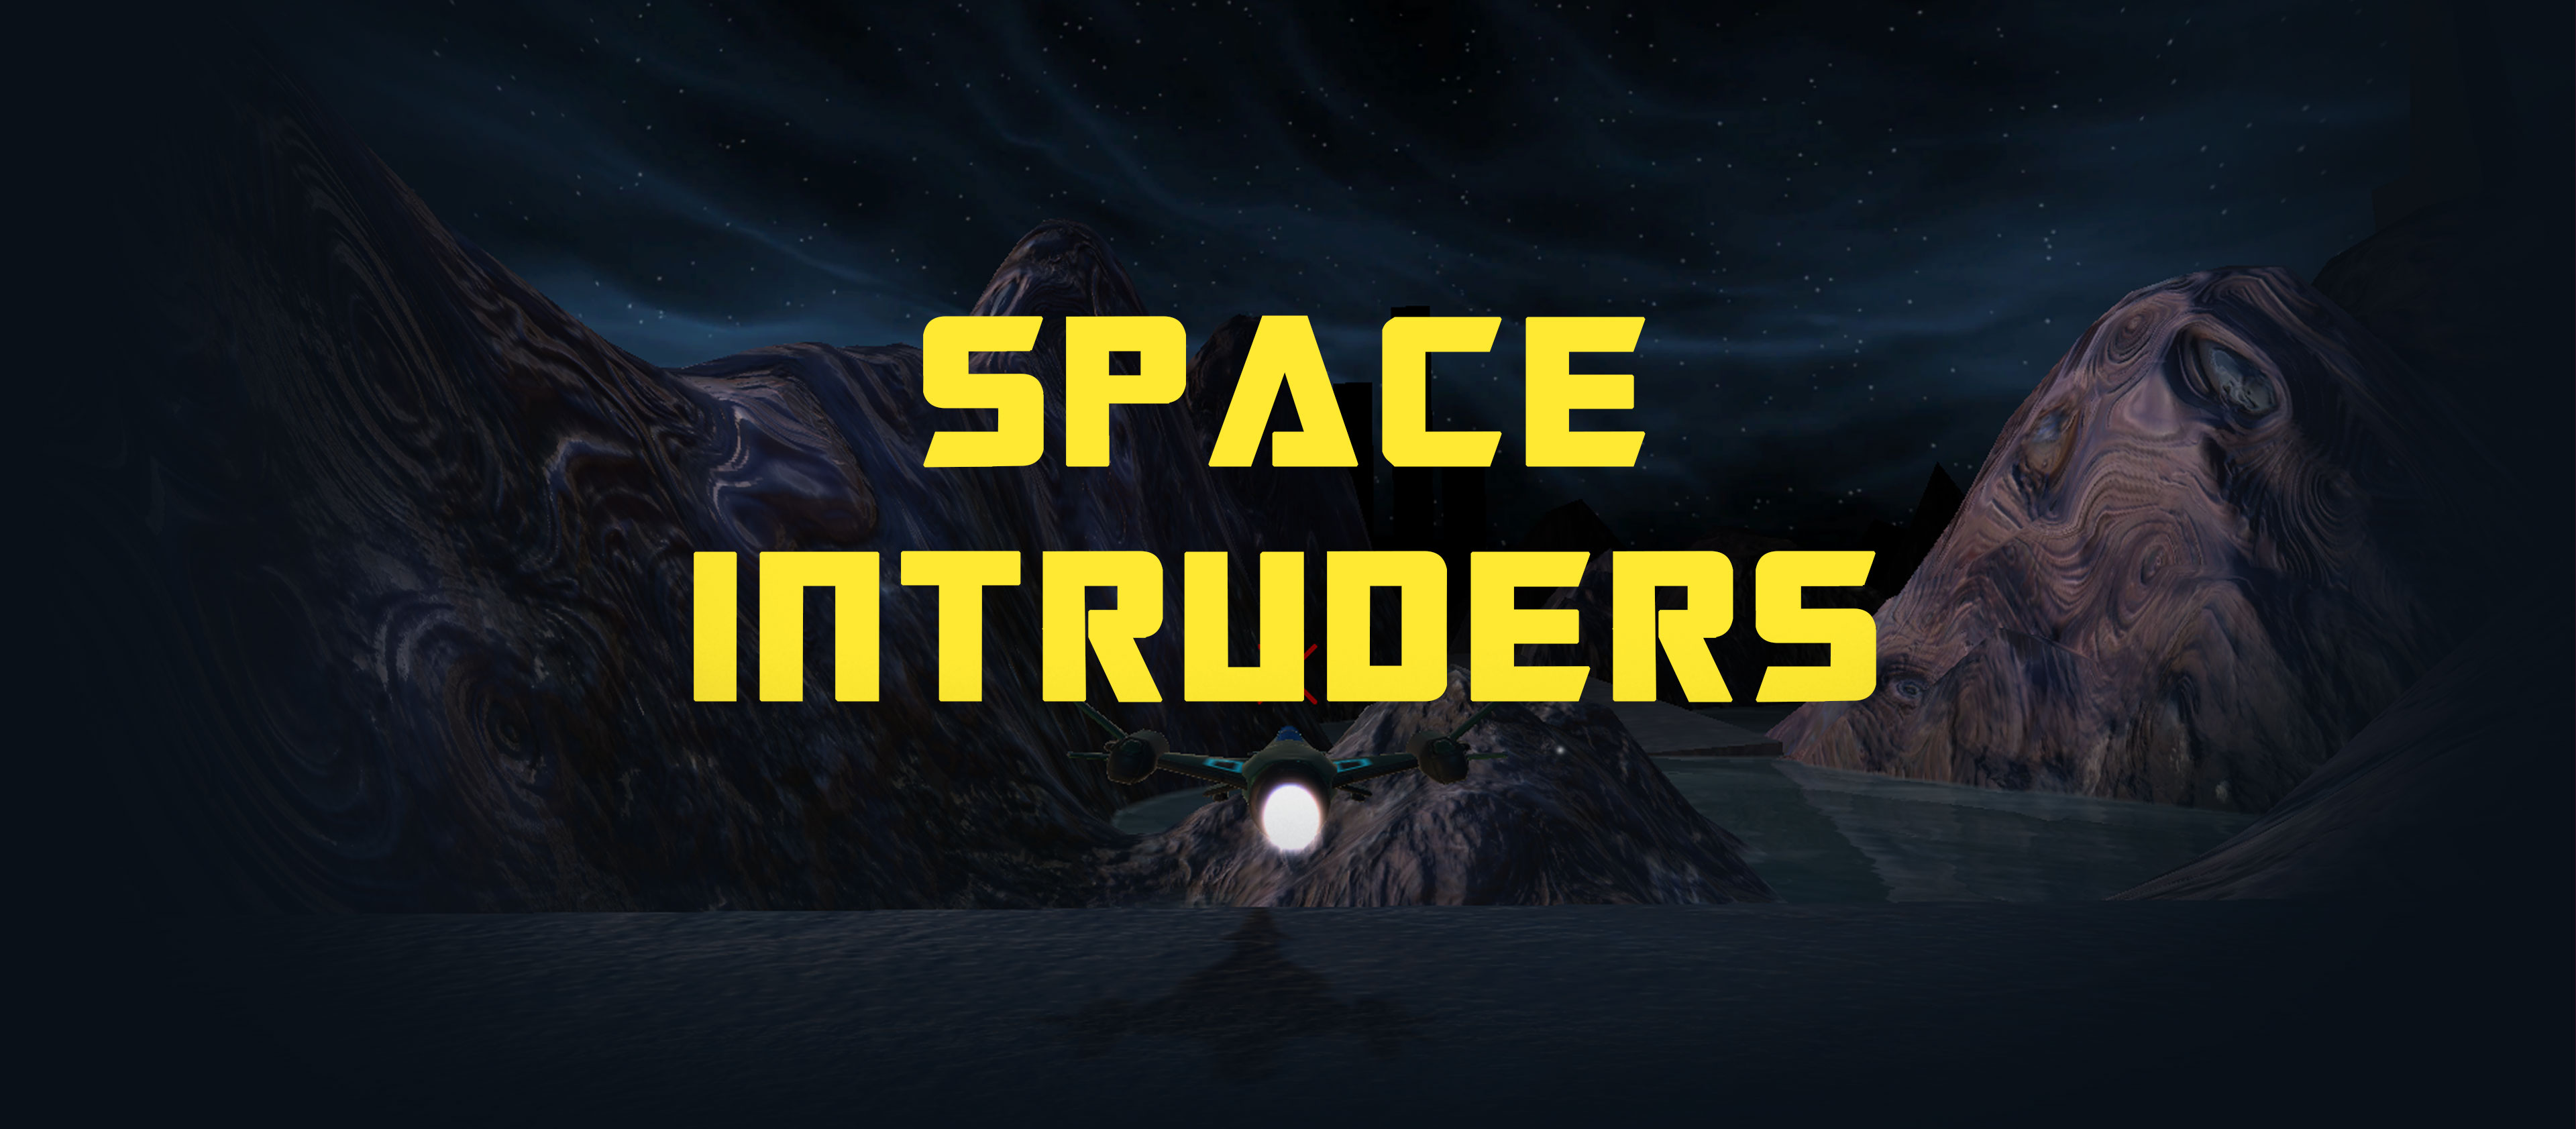 Space intruders